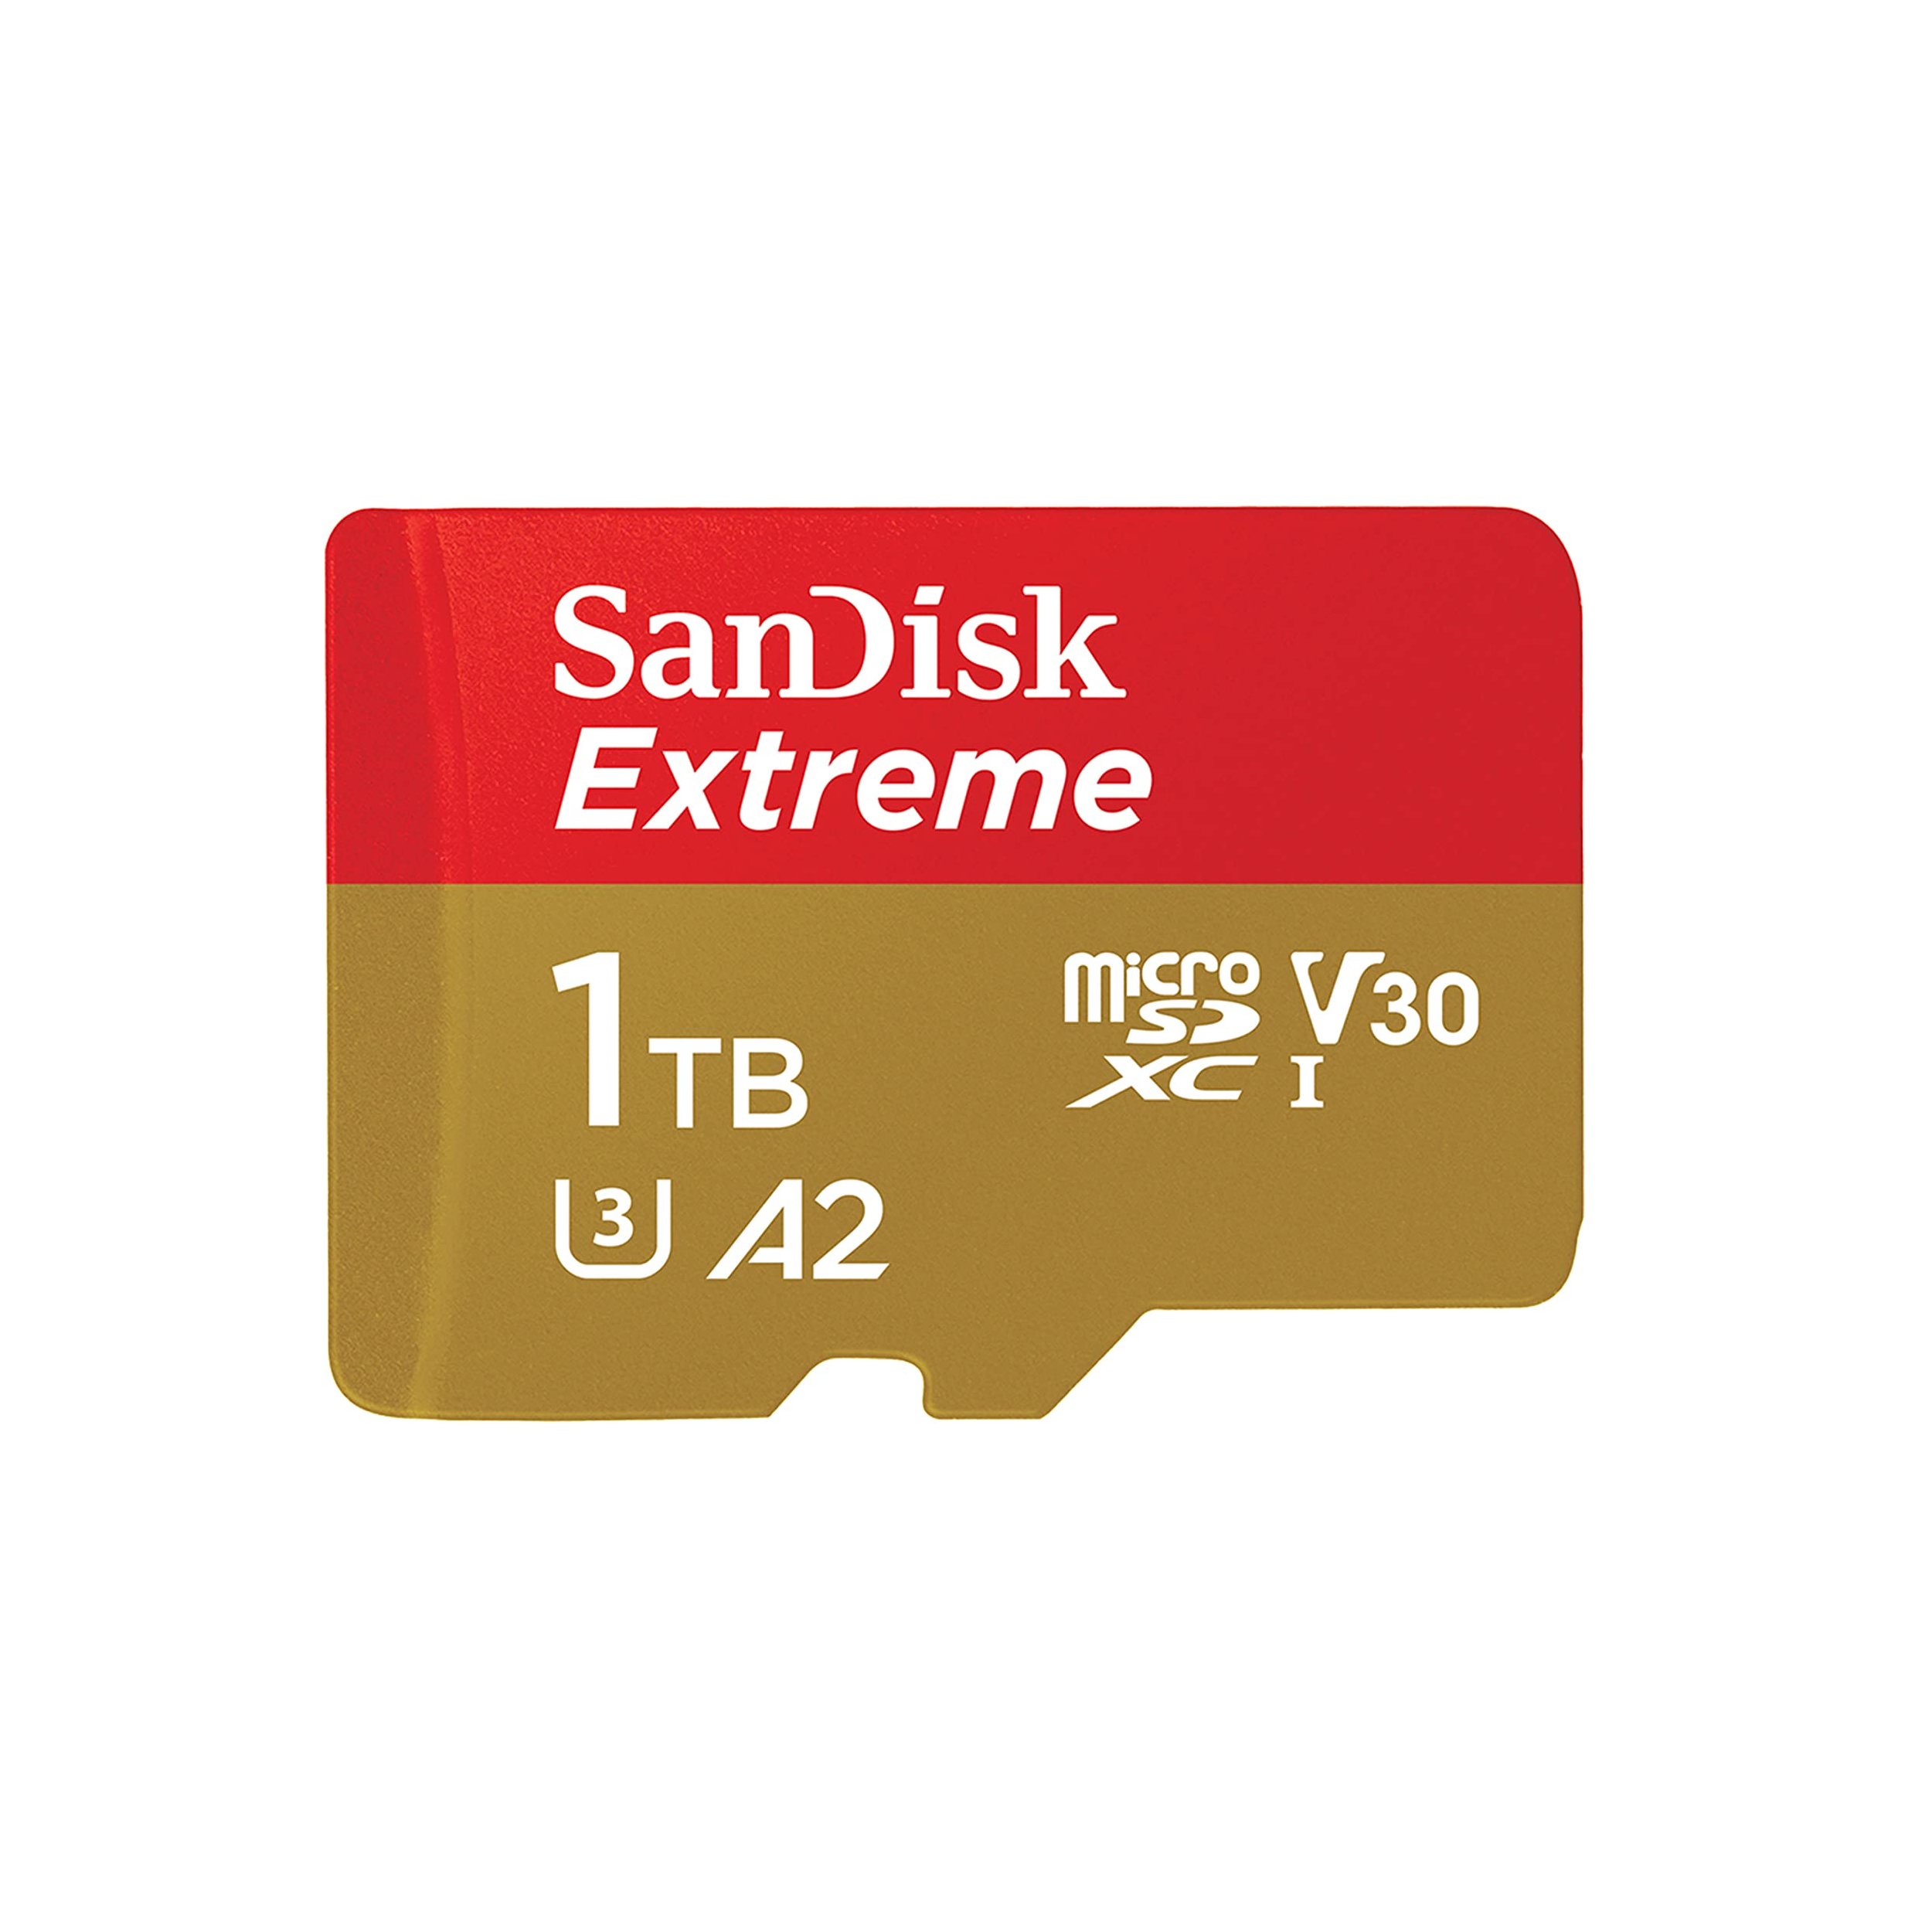 نکته خرید - قیمت روز کارت حافظه MicroSDXC سن دیسک مدل Extreme کلاس A2 استاندارد UHS-I U3 سرعت 190MBps ظرفیت یک ترابایت خرید